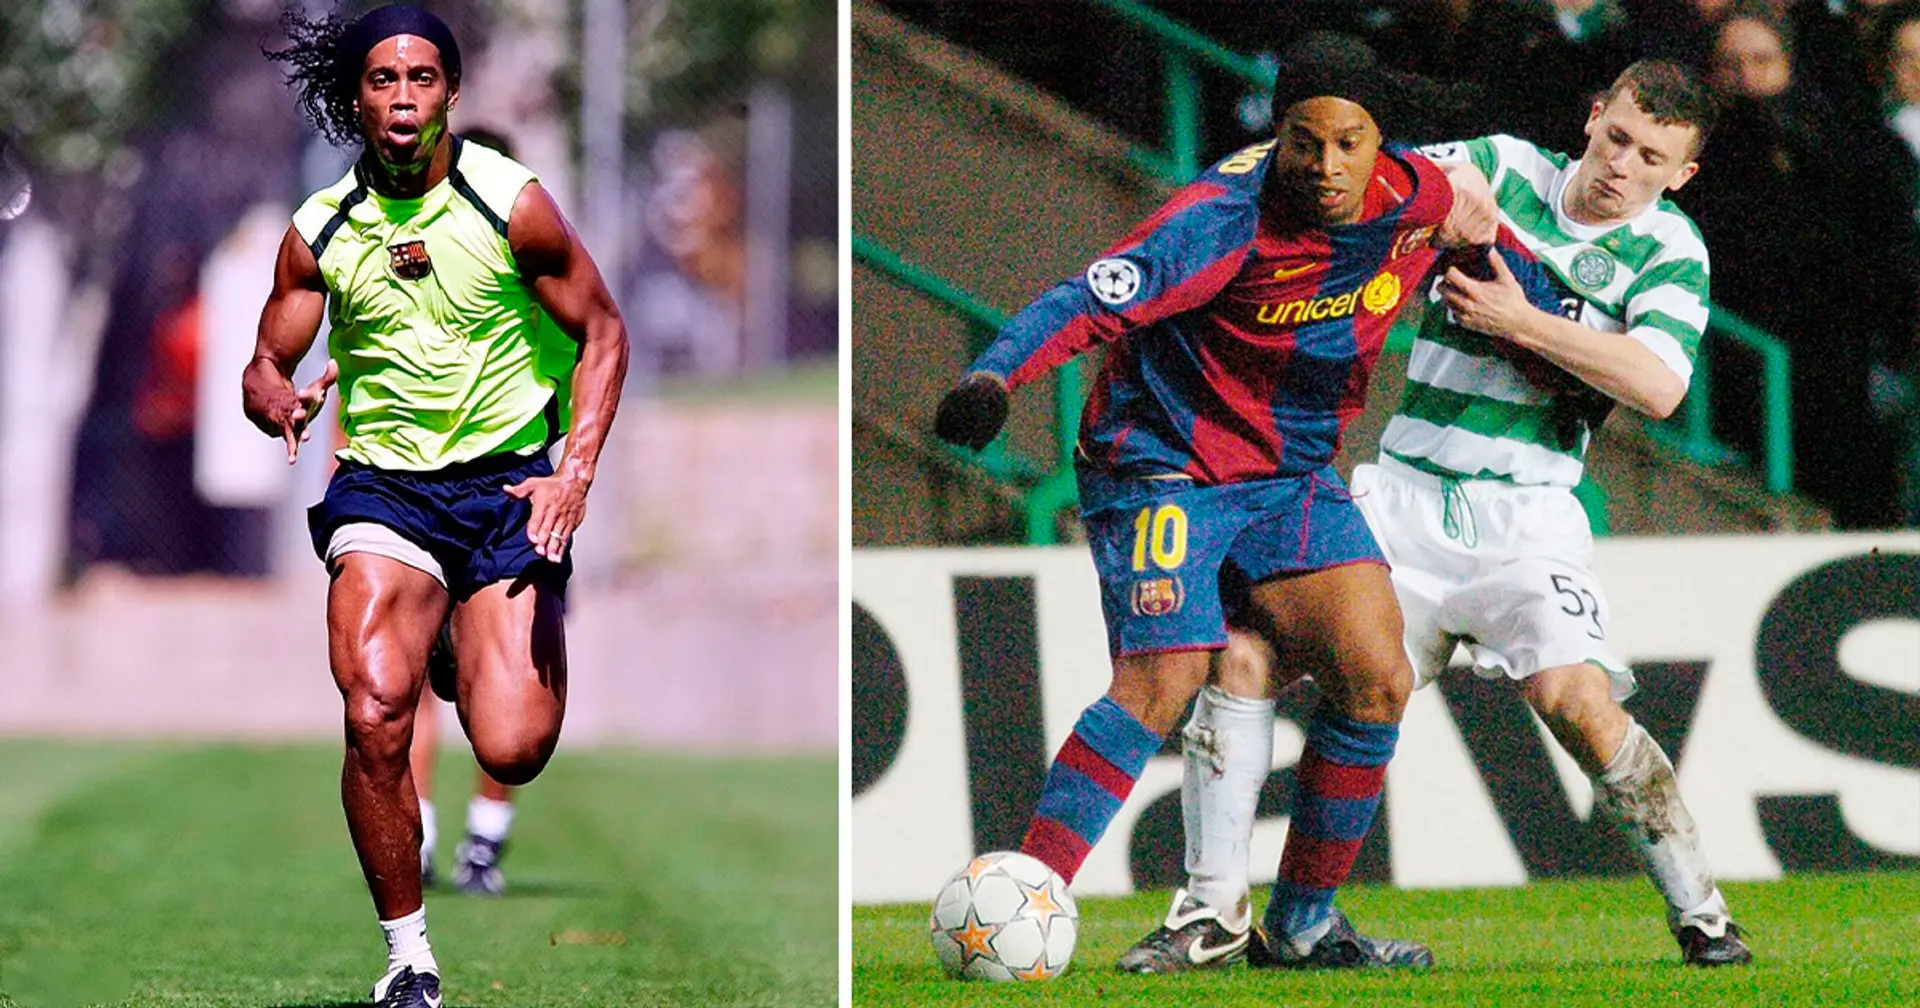 'Ronaldinho had the strongest bum I've ever felt': Ex-Celtic defender recalls facing Ronaldinho and Barcelona 